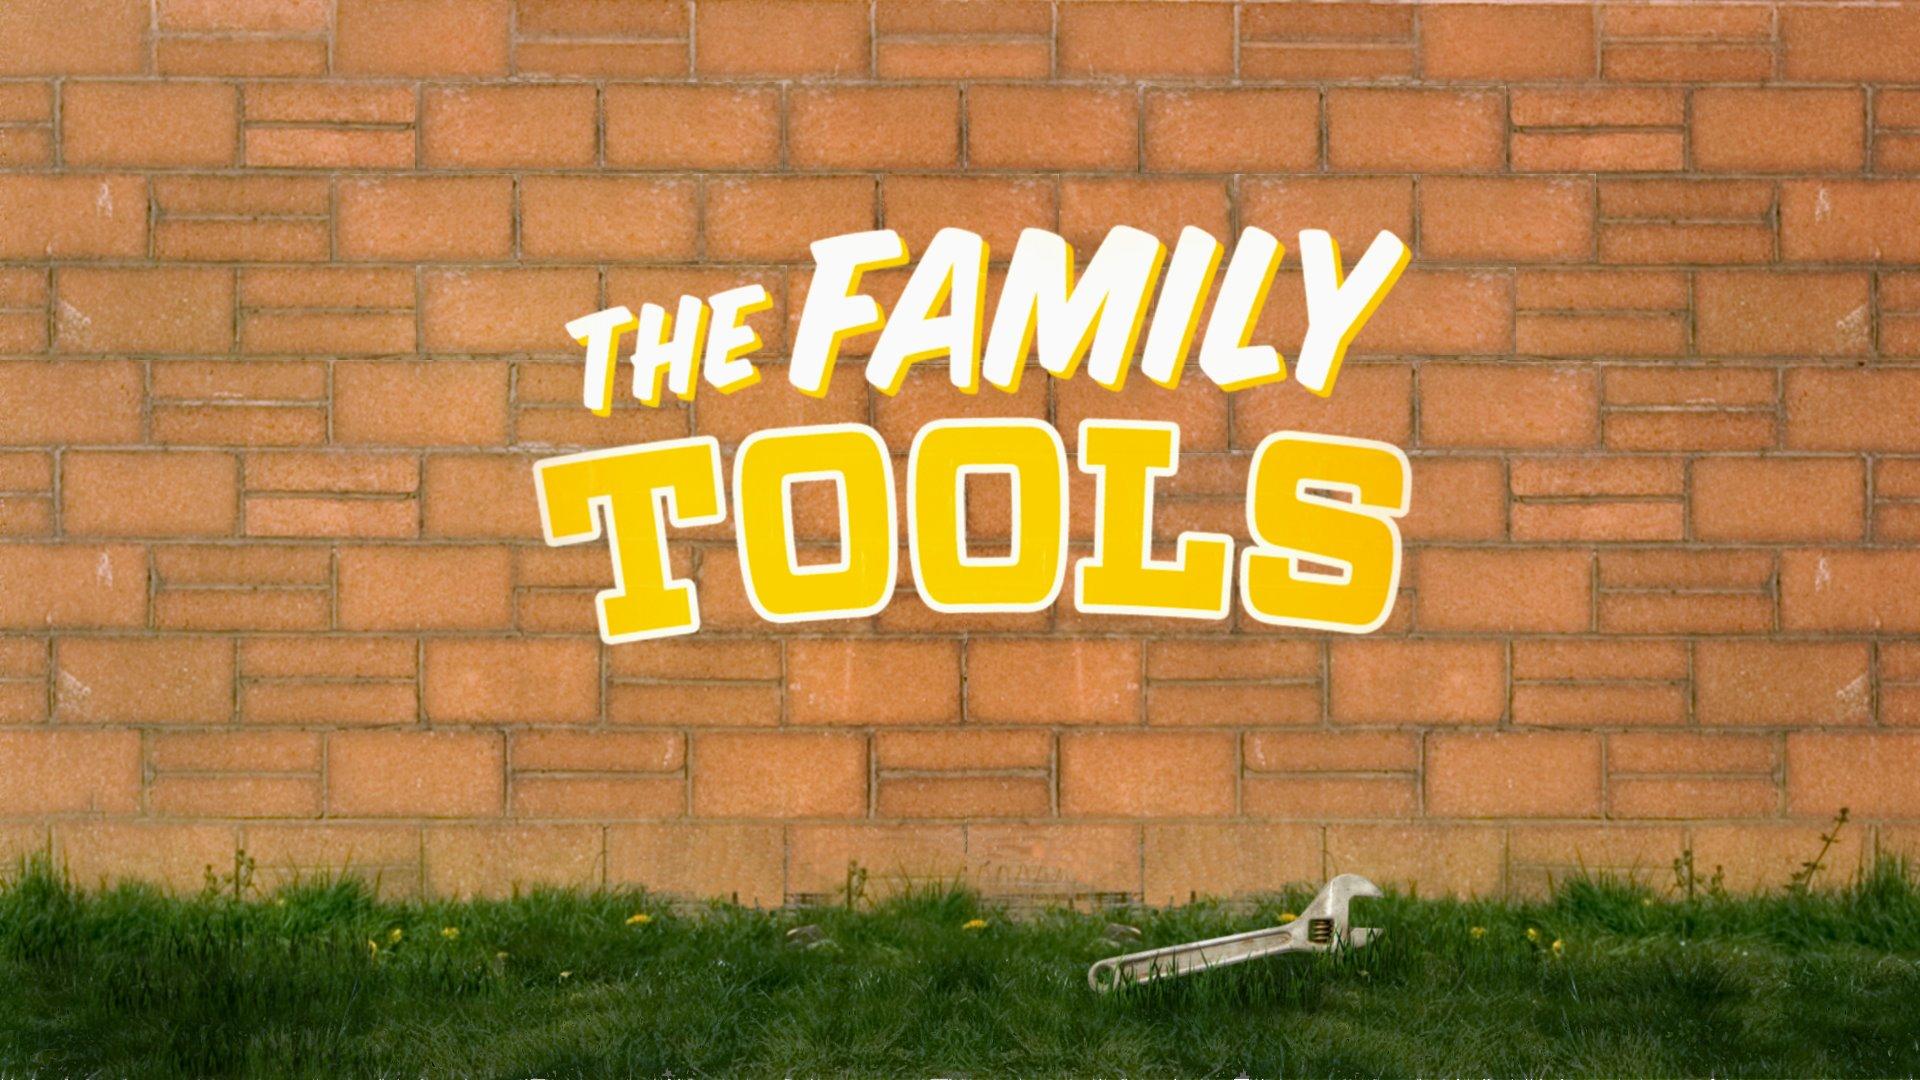 Постер фильма Семейные инструменты | Family Tools